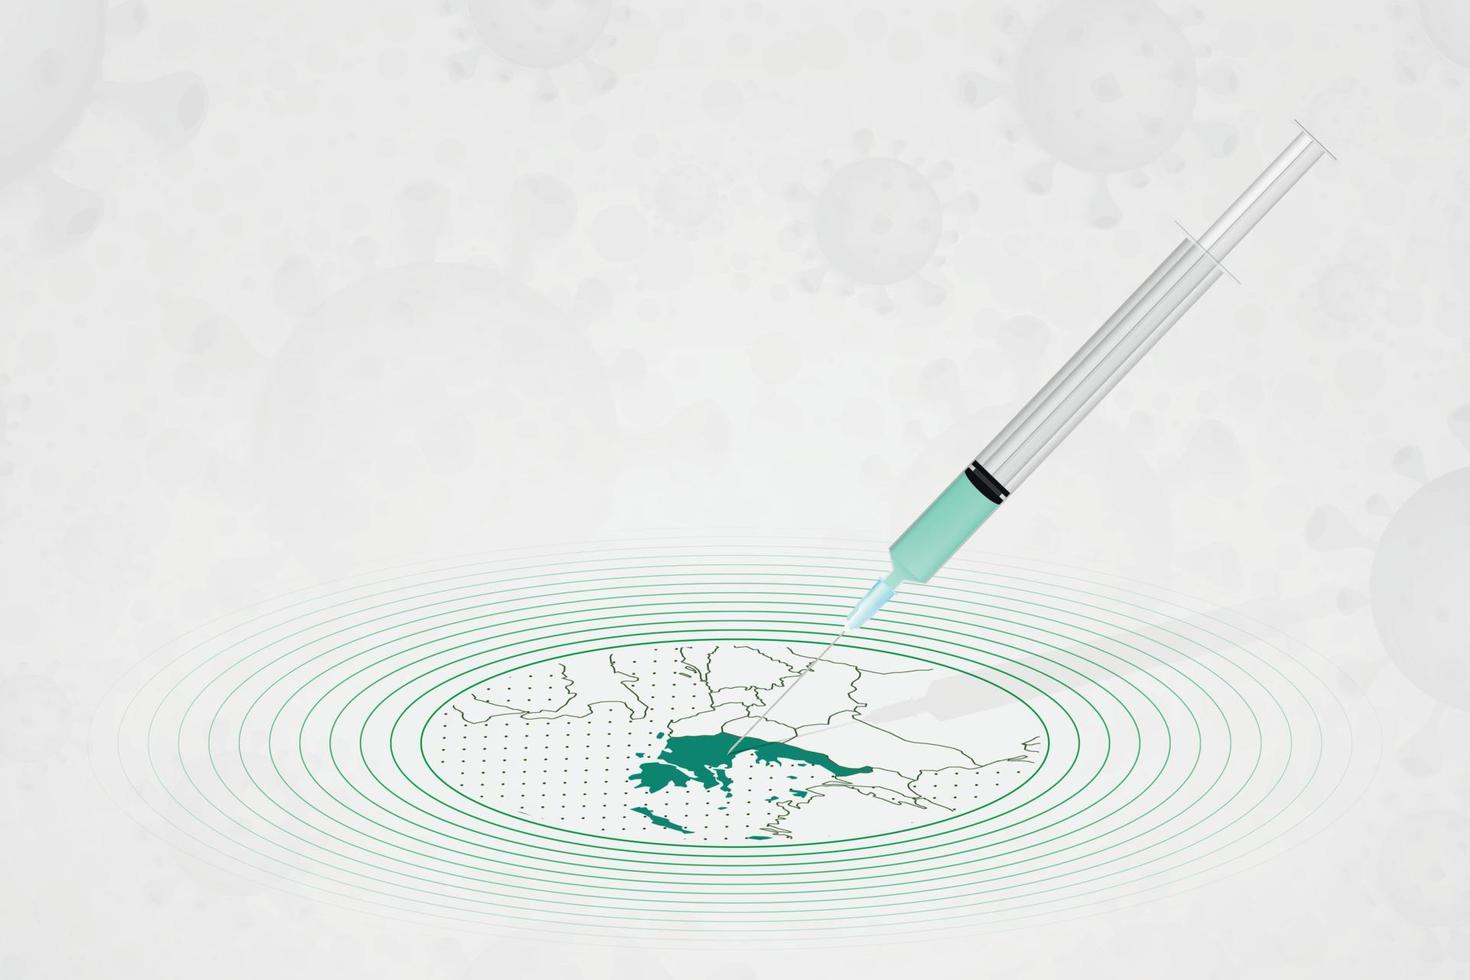 griekenland vaccinatie concept, vaccin injectie in kaart van griekenland. vaccin en vaccinatie tegen coronavirus, covid-19. vector